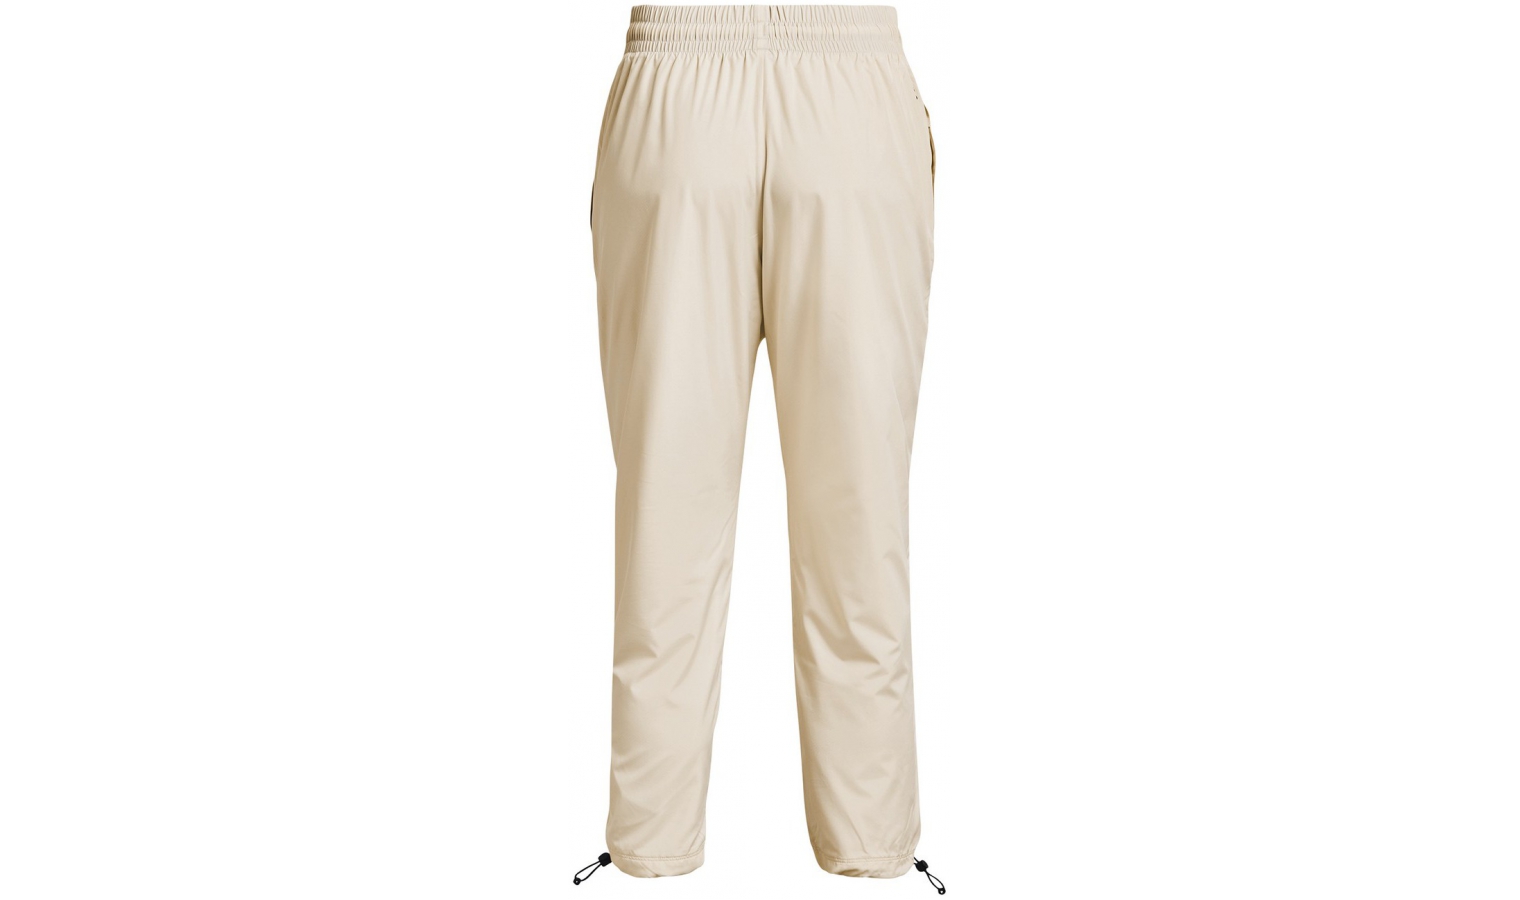 Womens leisure pants Under Armour PJT RCK BRAHMA PANT W white